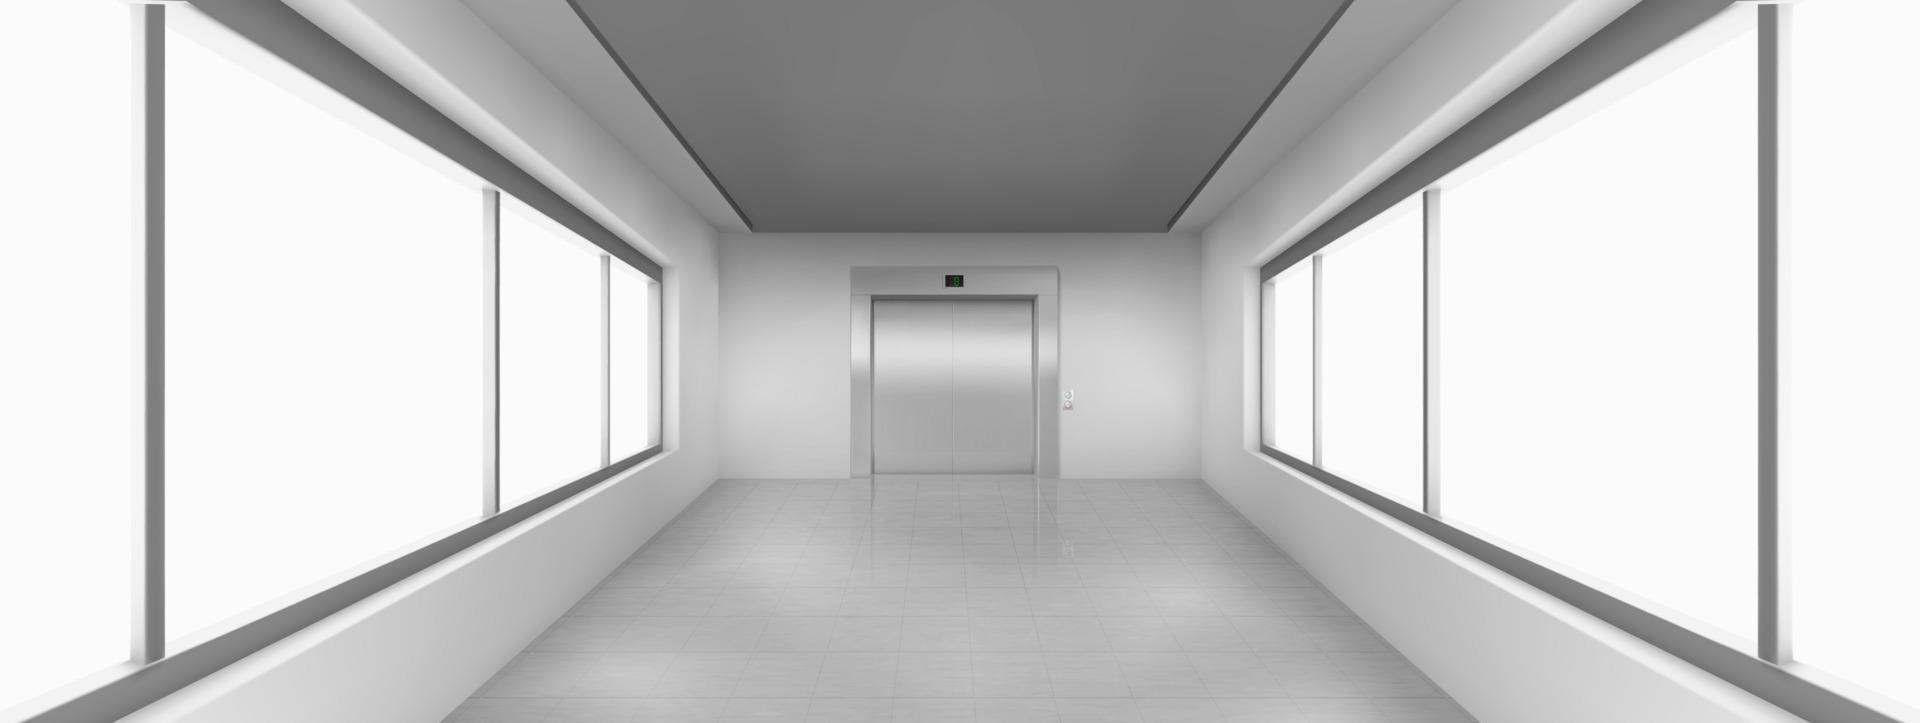 couloir vide avec de grandes fenêtres, porte d'ascenseur vecteur